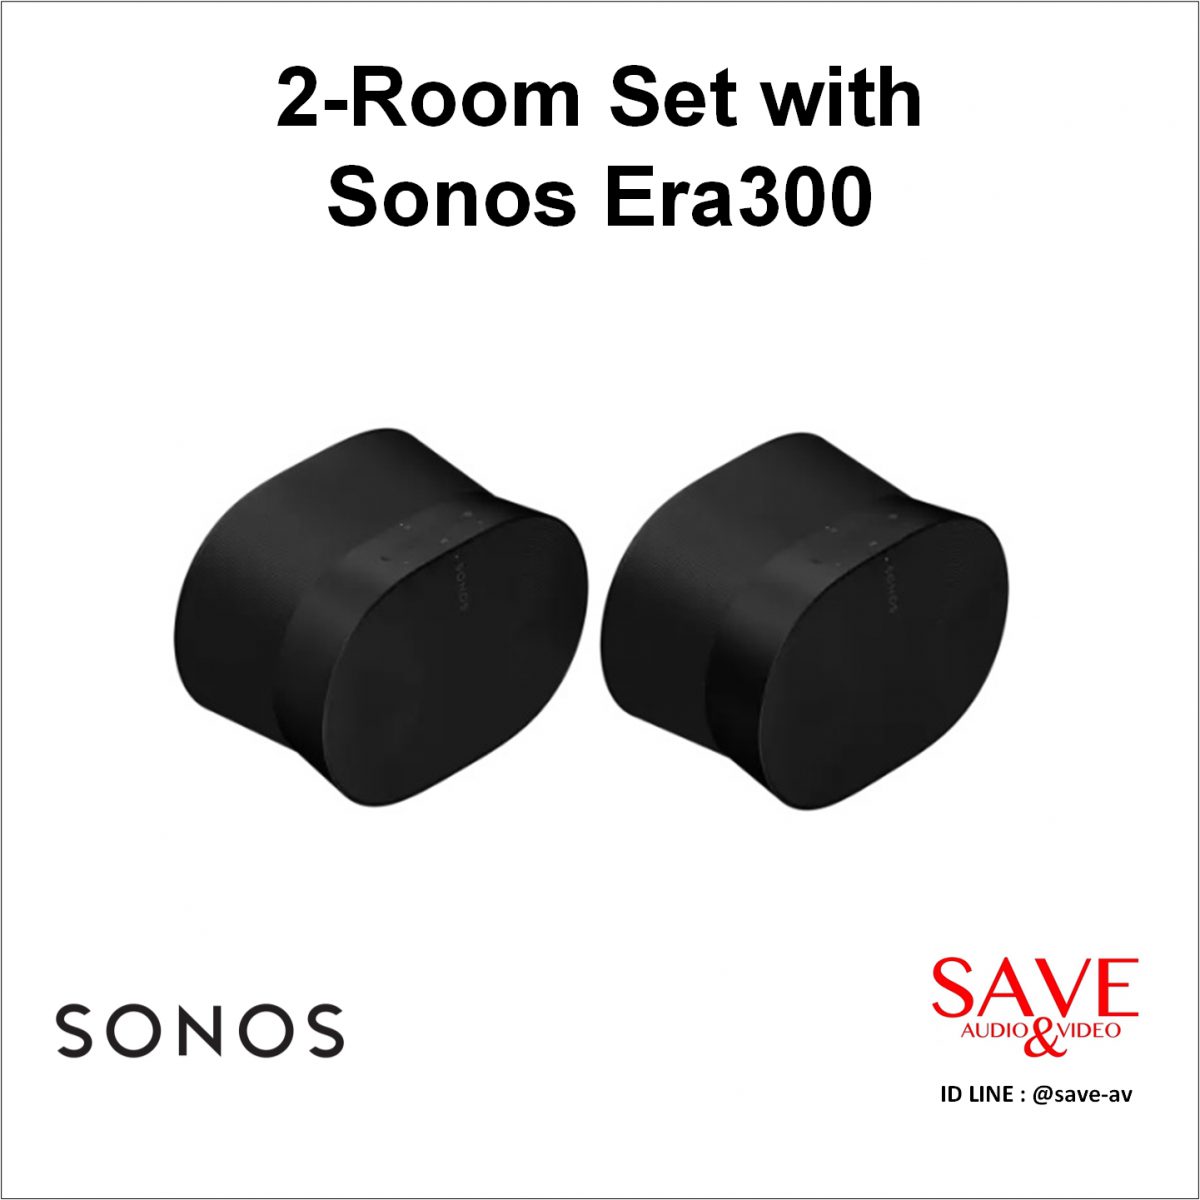 Sonos Thaialnd 2-Room Set with Sonos Era300